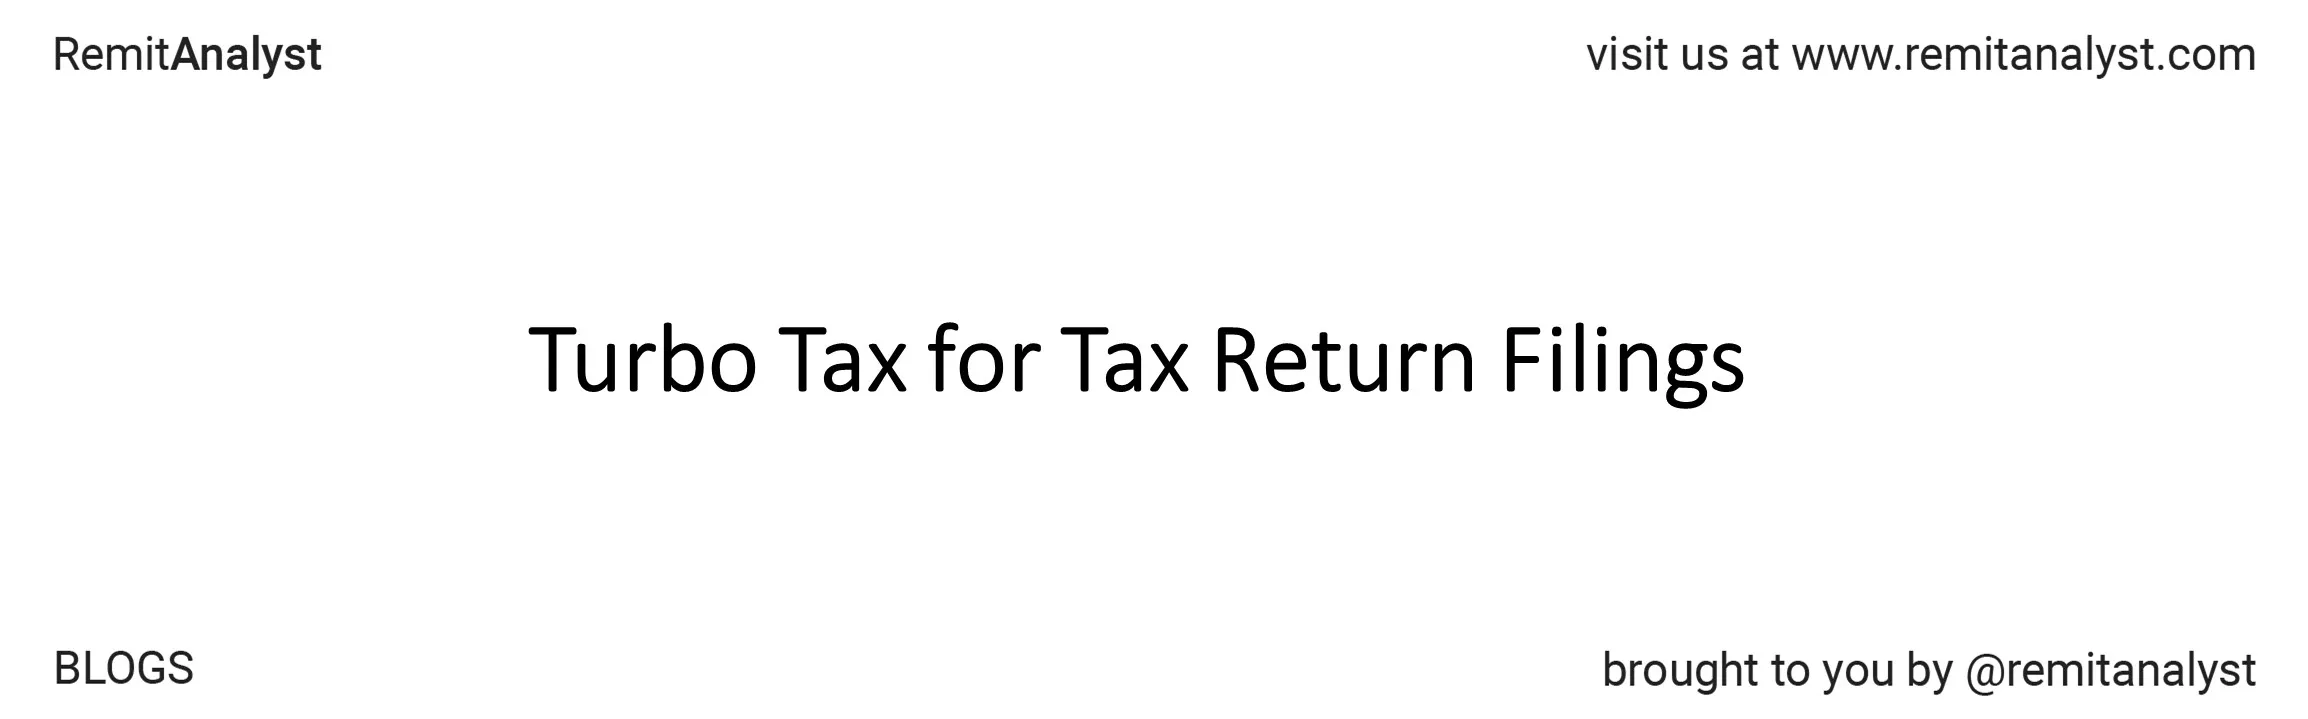 turbo-tax-for-tax-return-filings-title